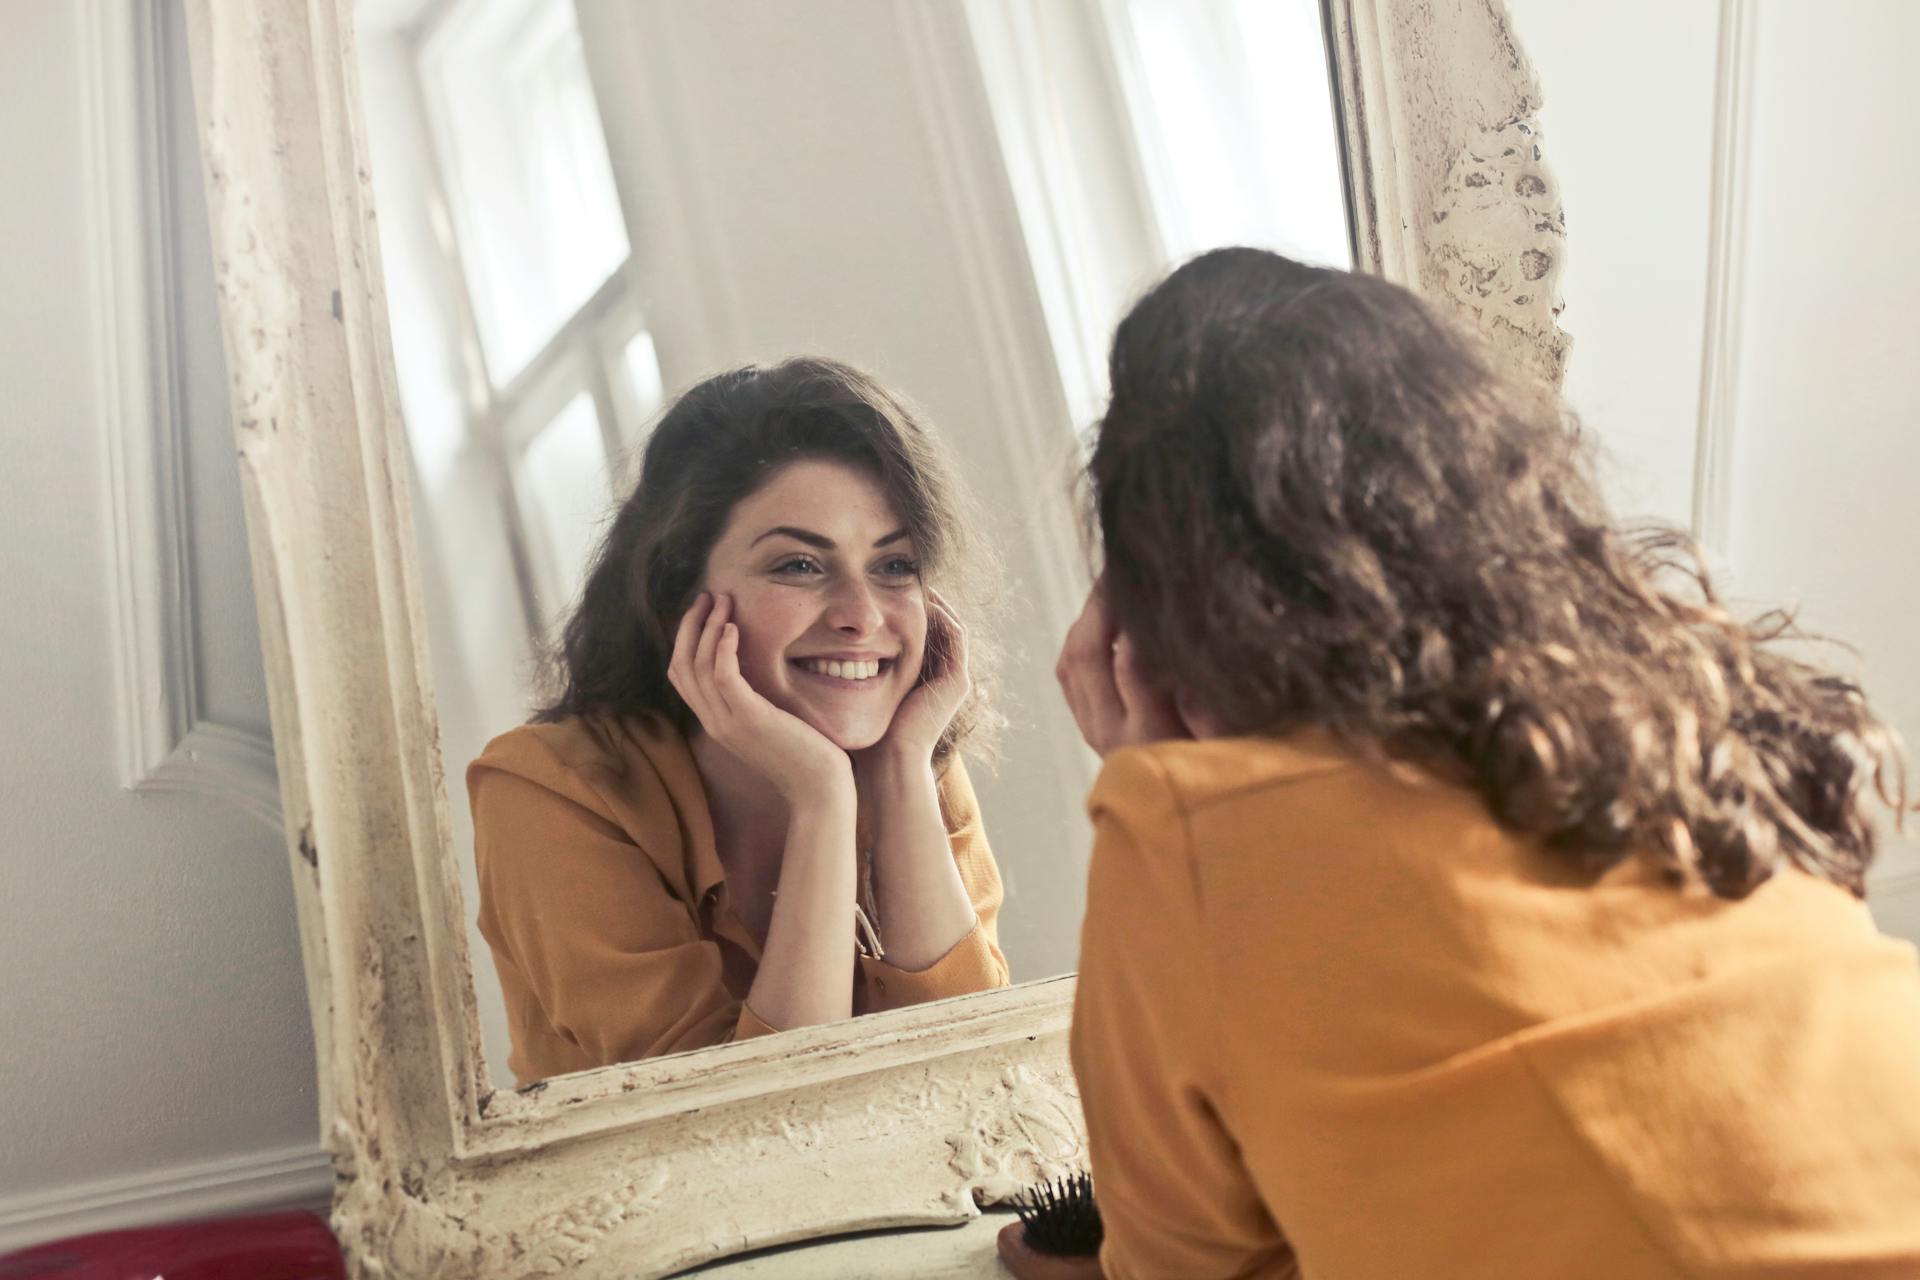 Una mujer sonriente mirando su reflejo en el espejo | Fuente: Pexels